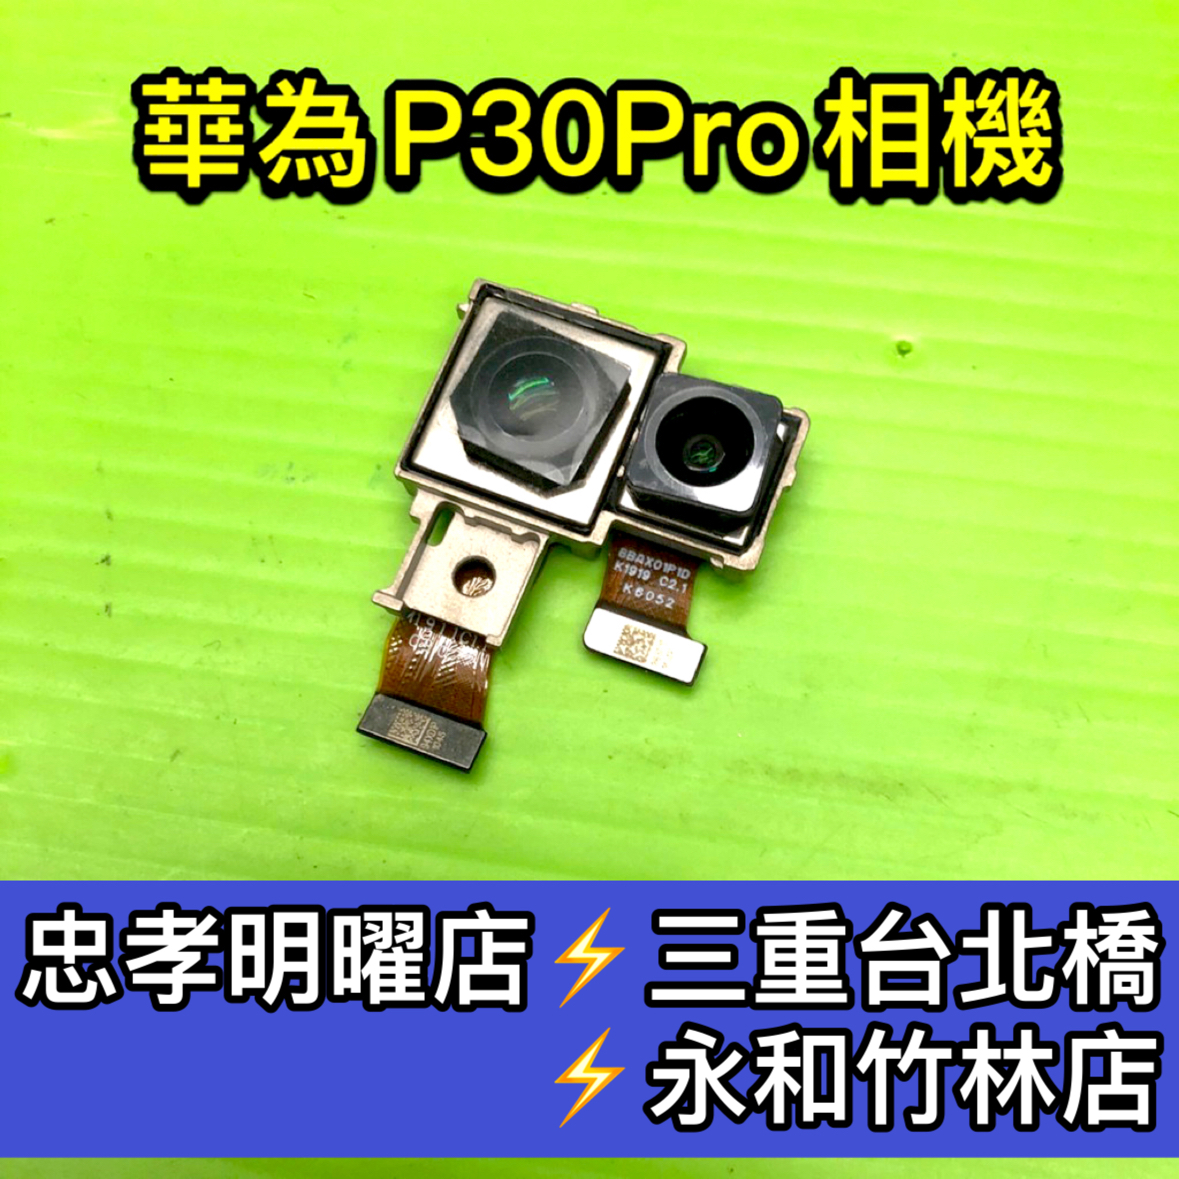 華為 P3 0Pro 相機鏡頭 P30PRO 鏡頭 主鏡頭